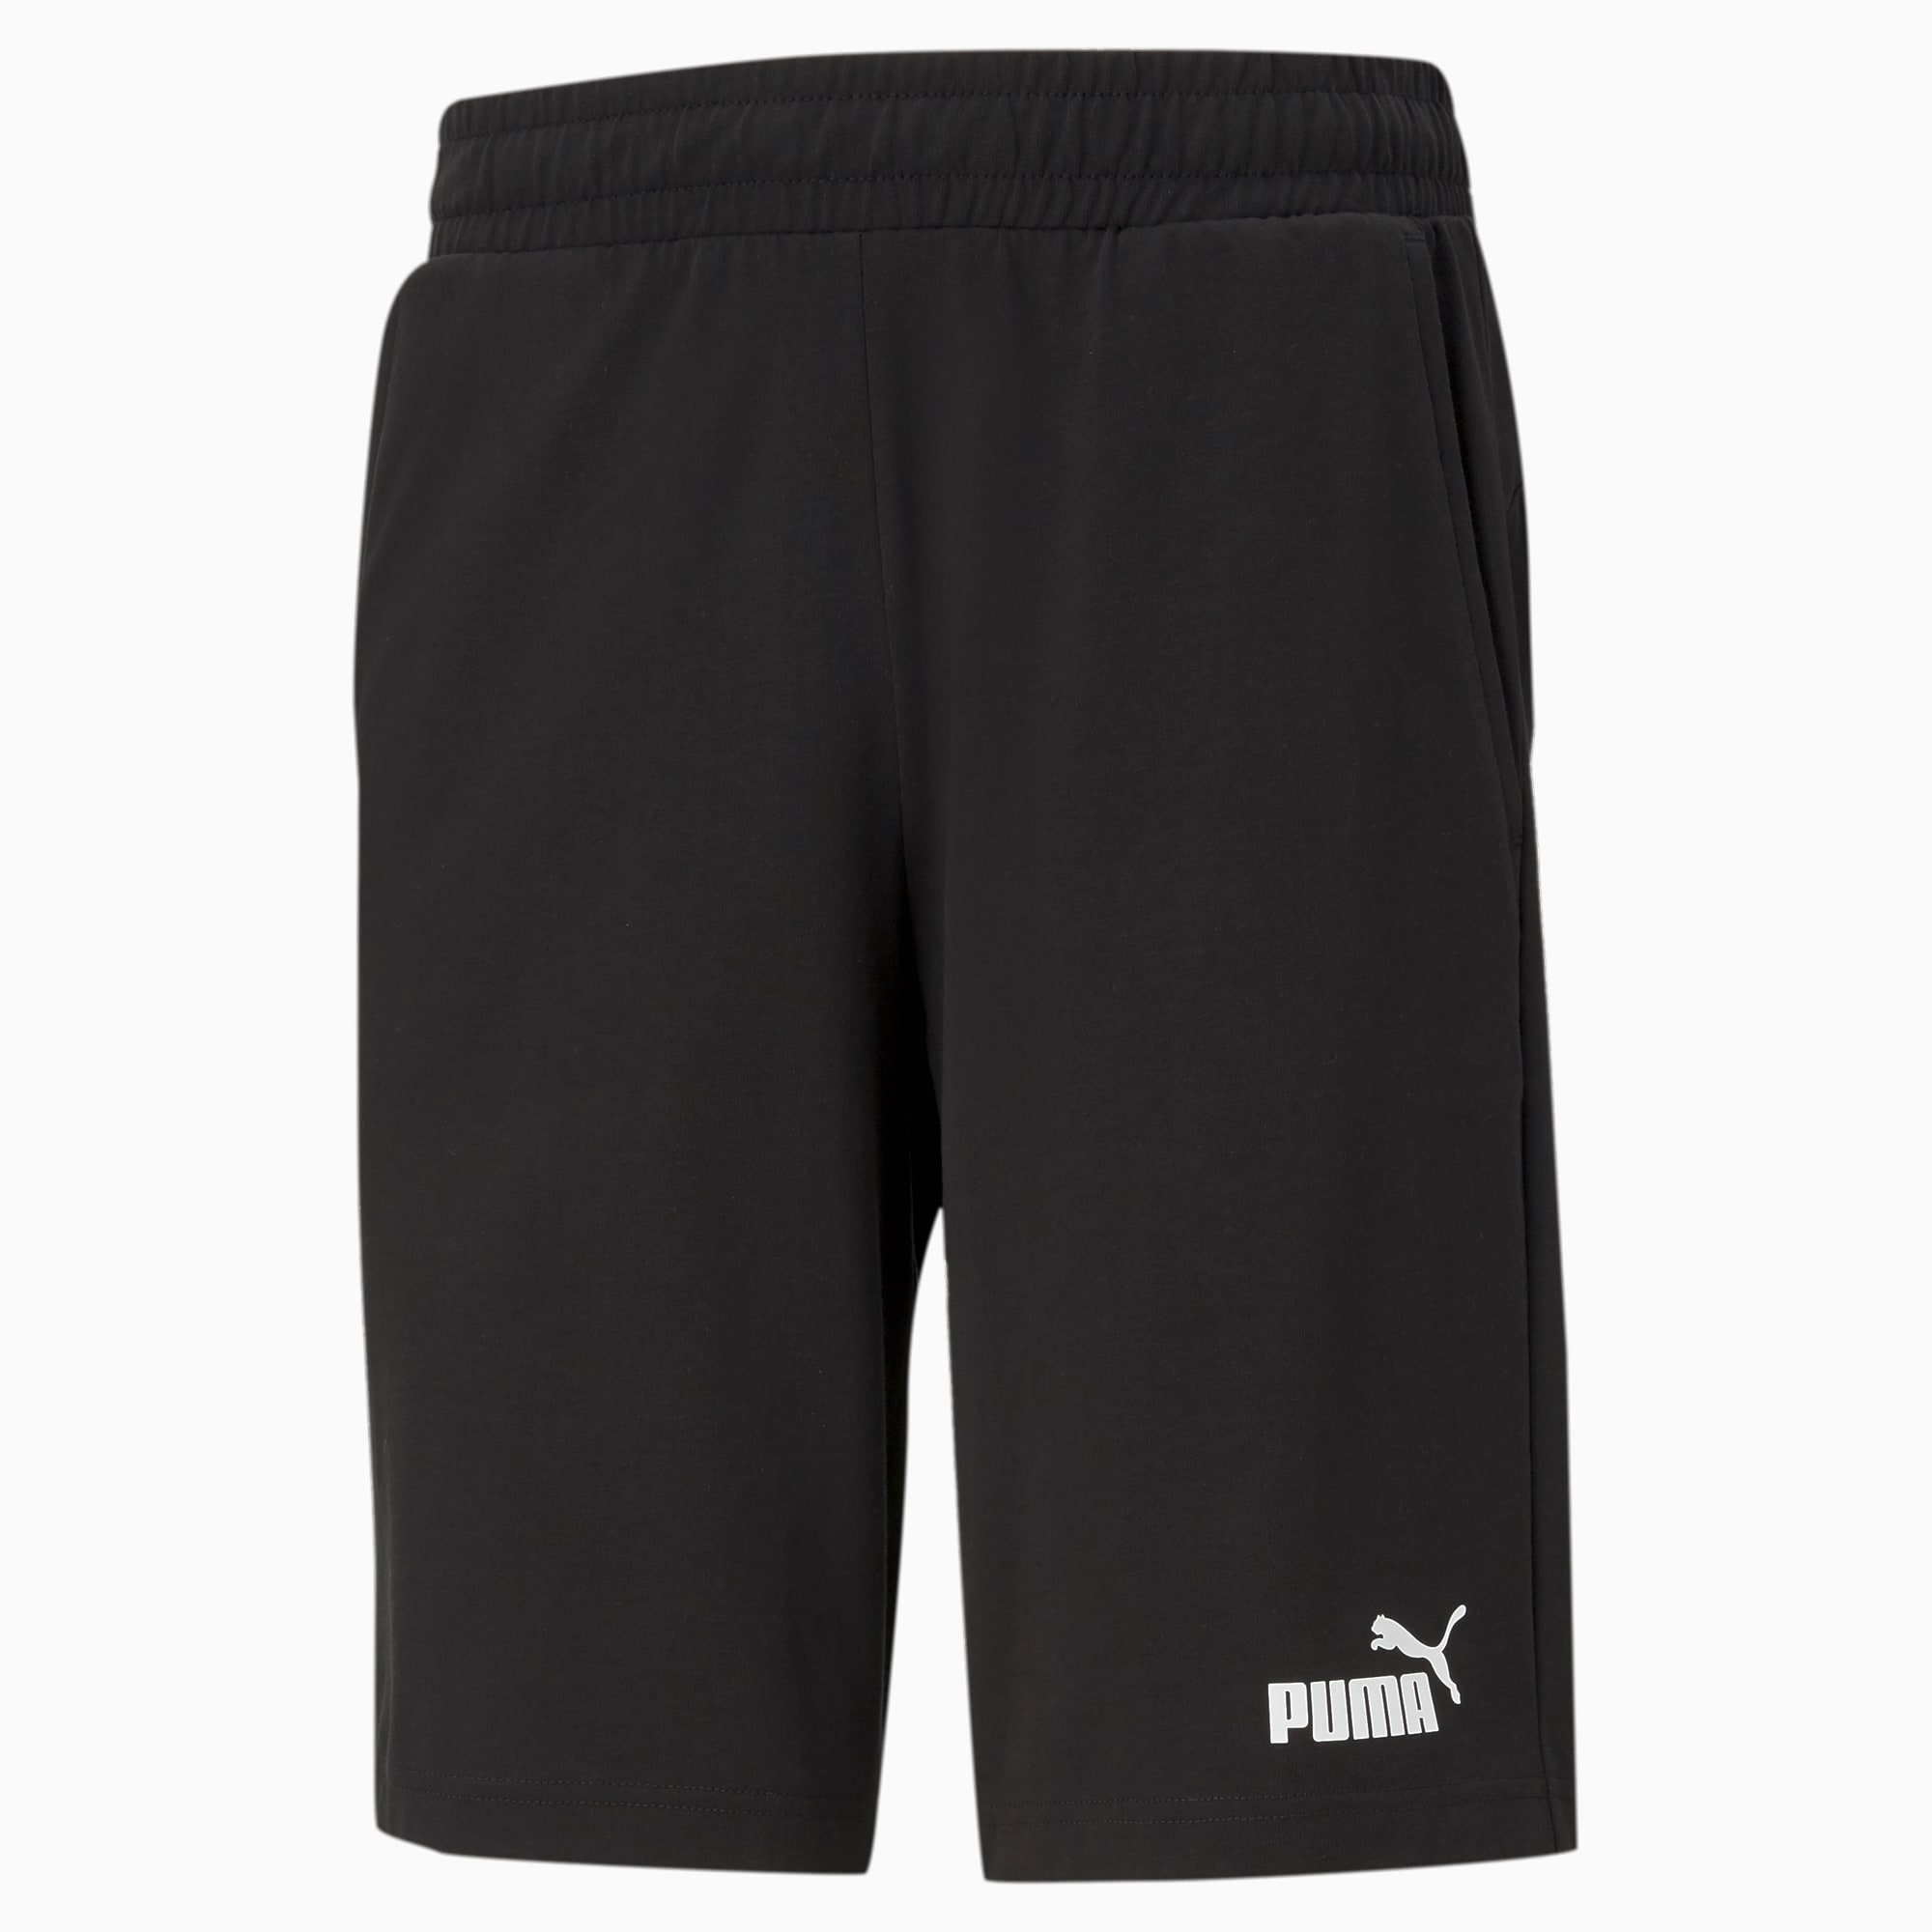 PUMA Essentials Jersey Men's Shorts, Black, Size L, Clothing